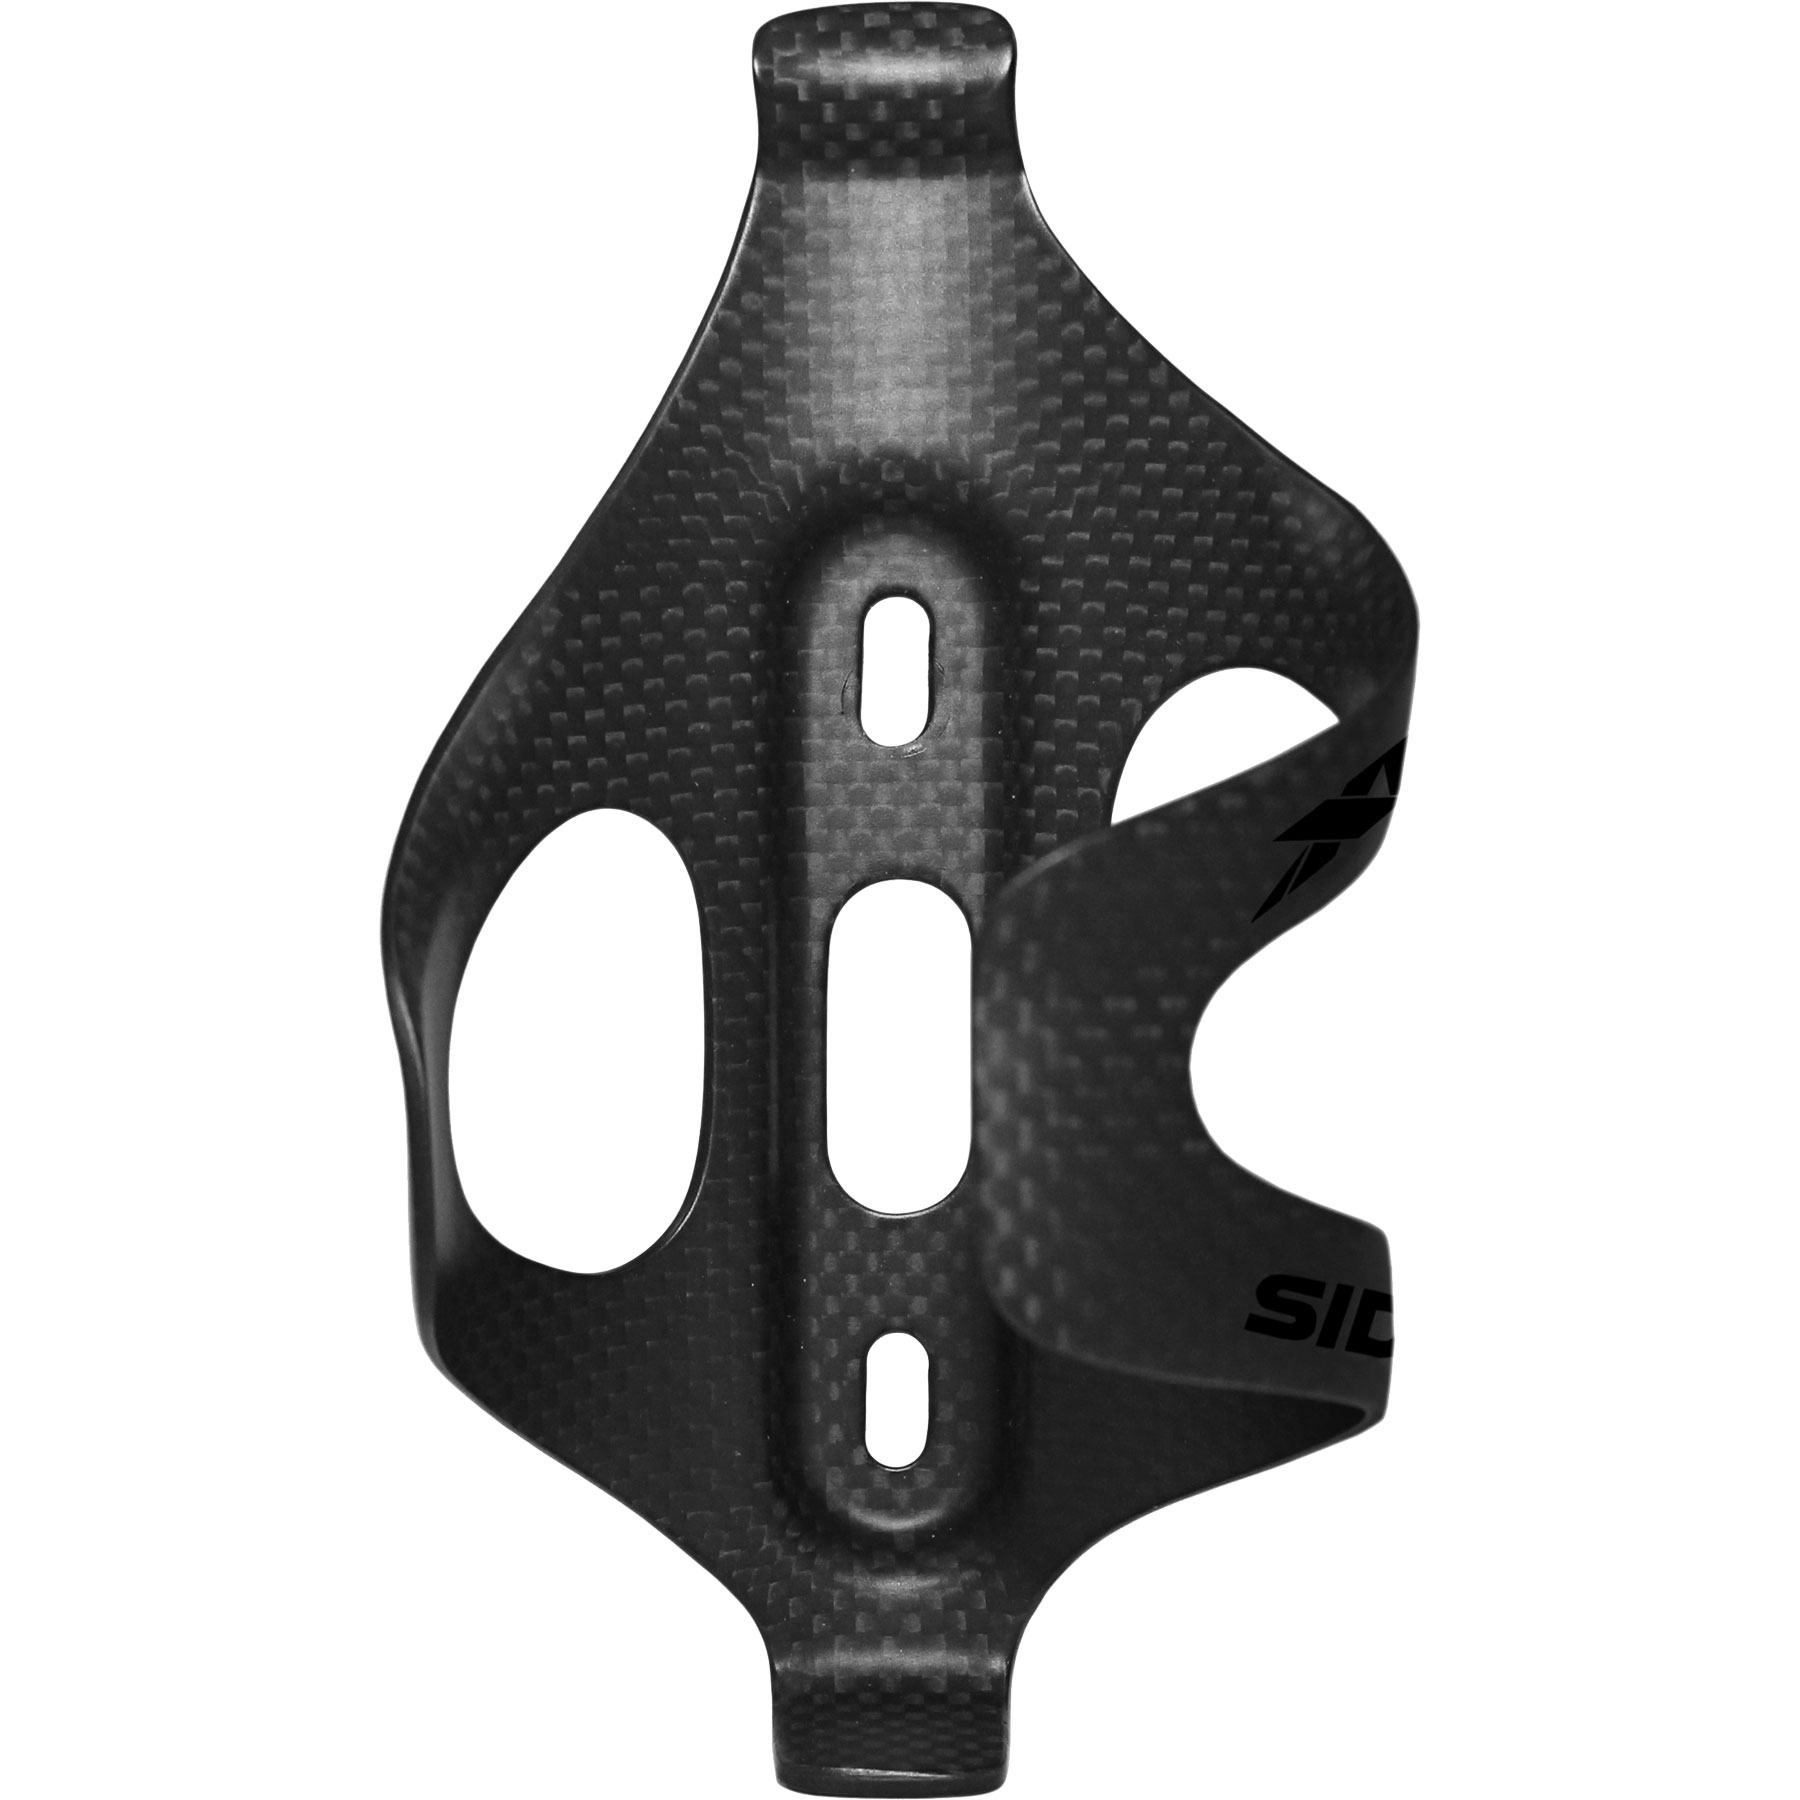 Productfoto van XLAB Sidekick Cage Carbon Bottle Cage - matt carbon